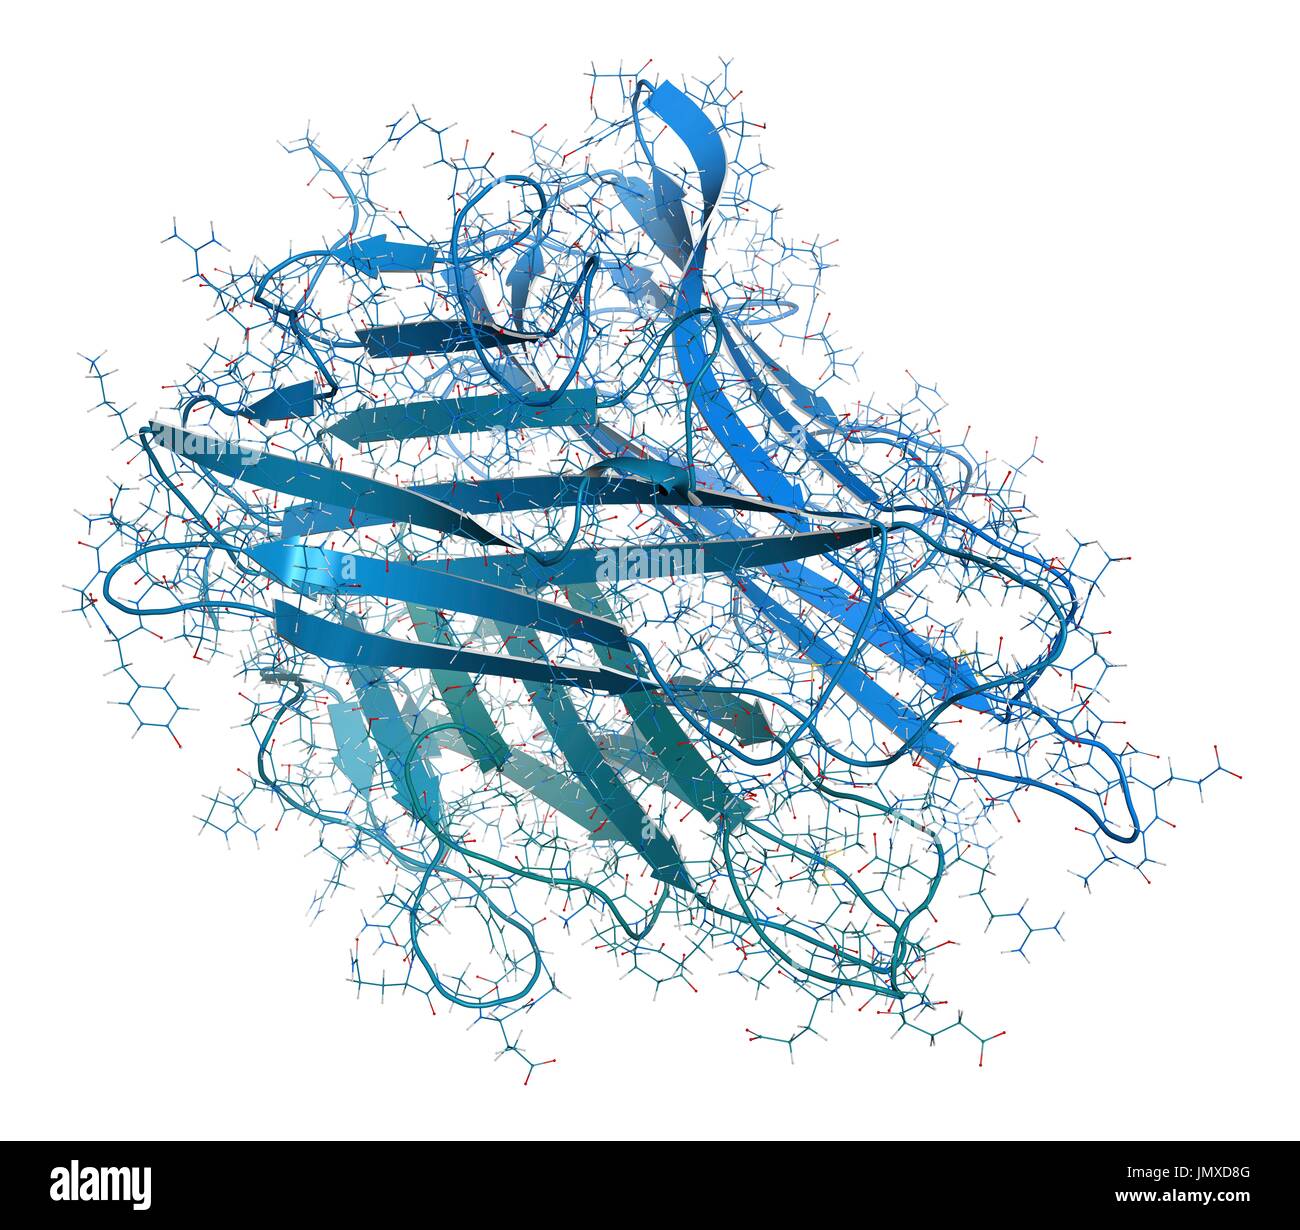 Tumor Nekrose Faktor alpha (TNF) Zytokin Eiweißmolekül. Klinisch verwendete Inhibitoren zählen unter anderem Dosiserhöhung, Certolizumab, Infliximab und Etanercept und werden verwendet, um Krankheiten wie Morbus Crohn, Psoriasis und rheumatoider Arthritis zu behandeln. Kombinierte Drahtmodell und Cartoon-Modell. Cartoon und Kohlenstoff-Atome: Rückgrat gradient Färbung (blau-blaugrün); andere Atome: konventionelle Farbkodierung. Stockfoto